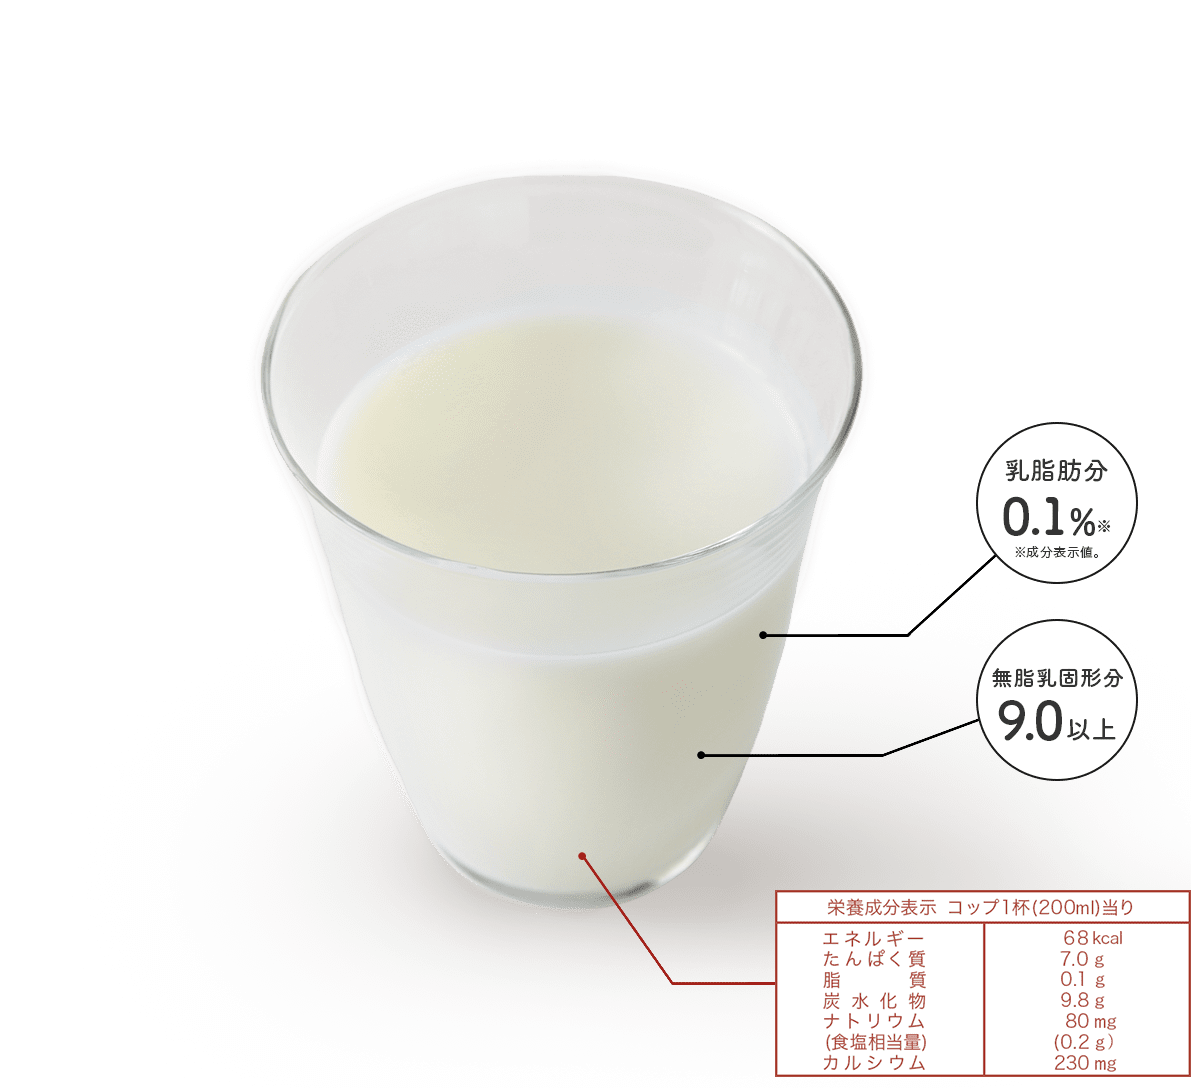 乳脂肪分 0.1% 無脂乳固形分 9.0以上